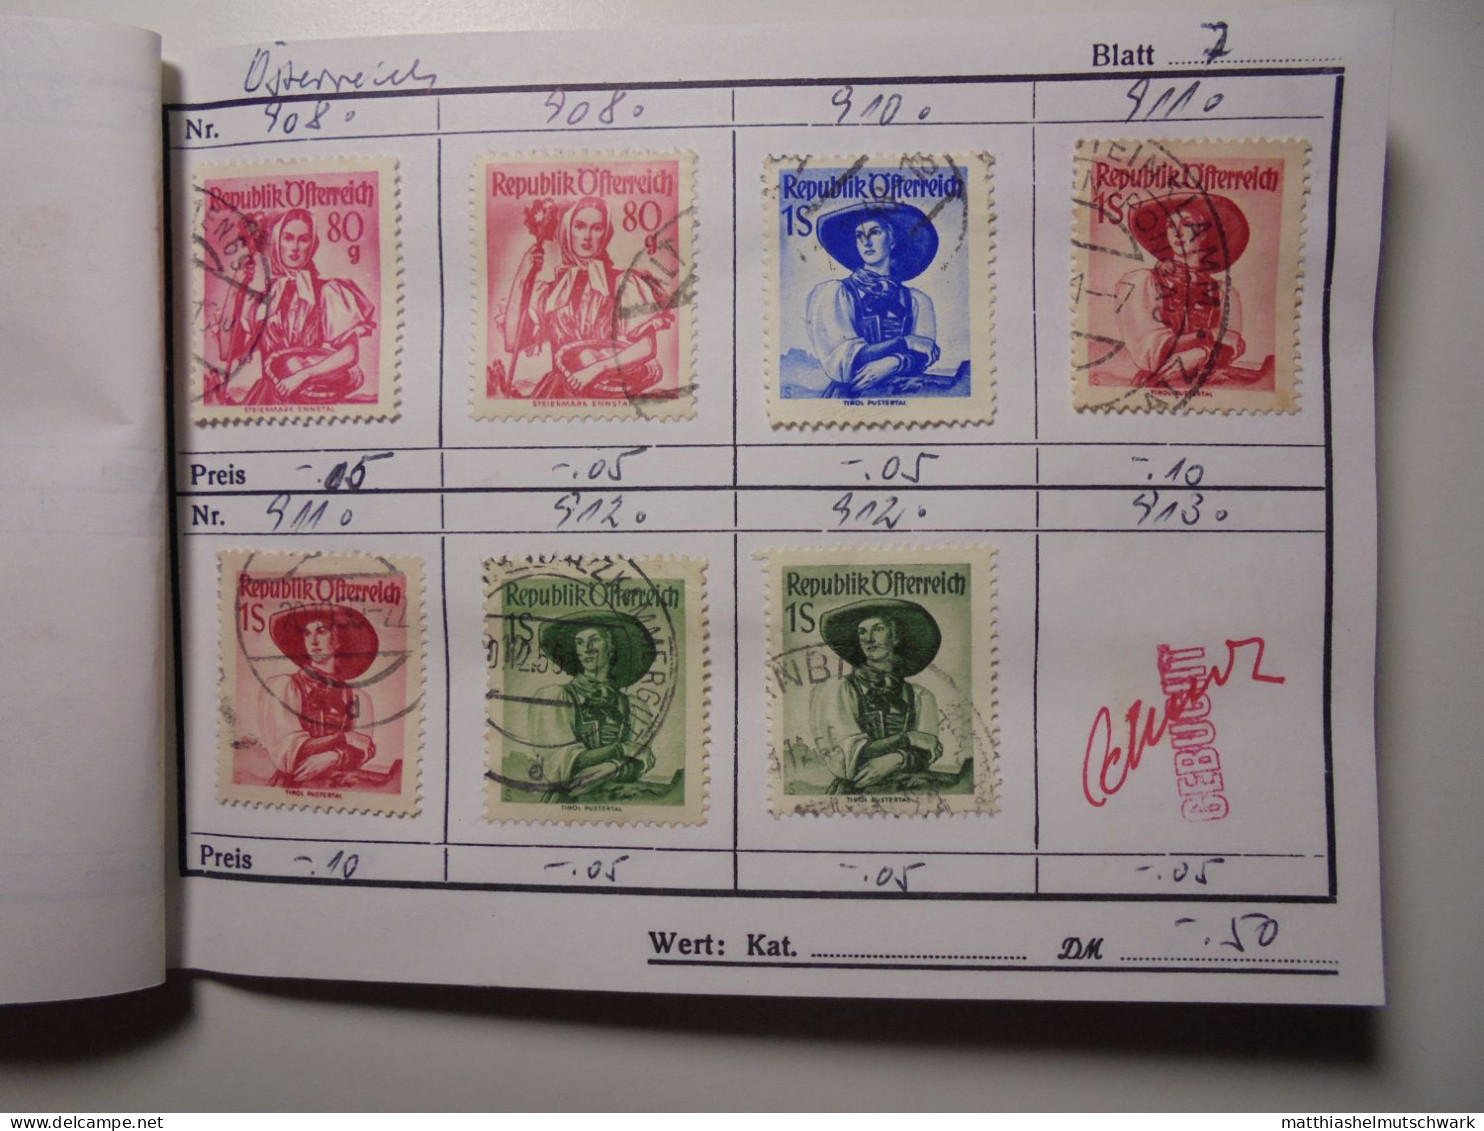 Auswahlheft Nr. 390 20 Blätter 105 Briefmarken  Österreich ca. 1935-1962/Mi Nr. 577-1118, unvollständig